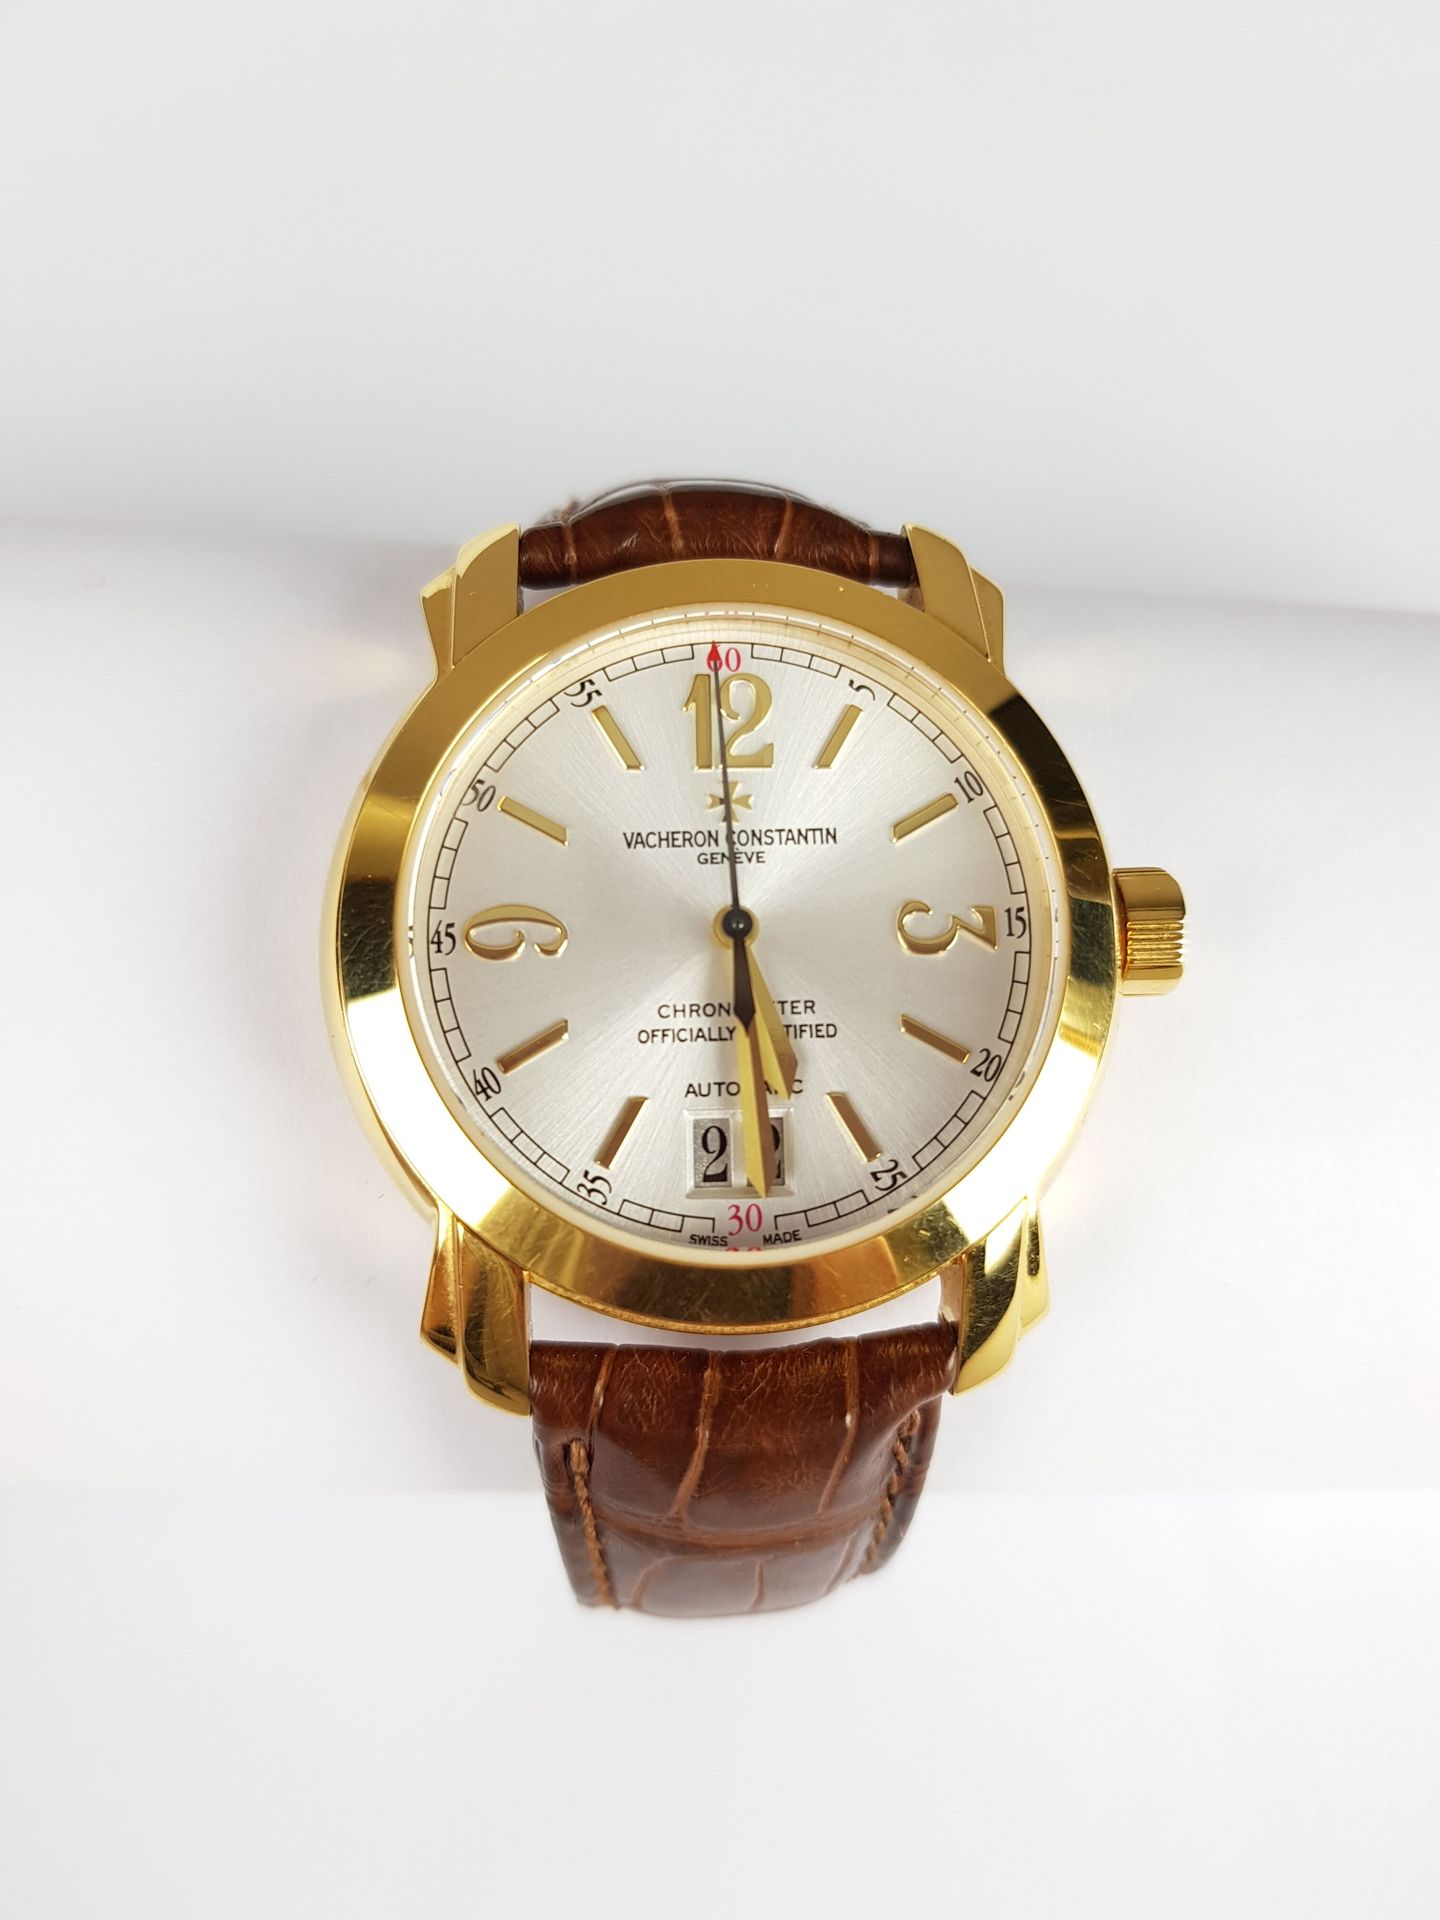 Null Zum Verkauf angeboten: 3.000 €.

VACHERON Constantin

Uhr aus 750 Tausendst&hellip;